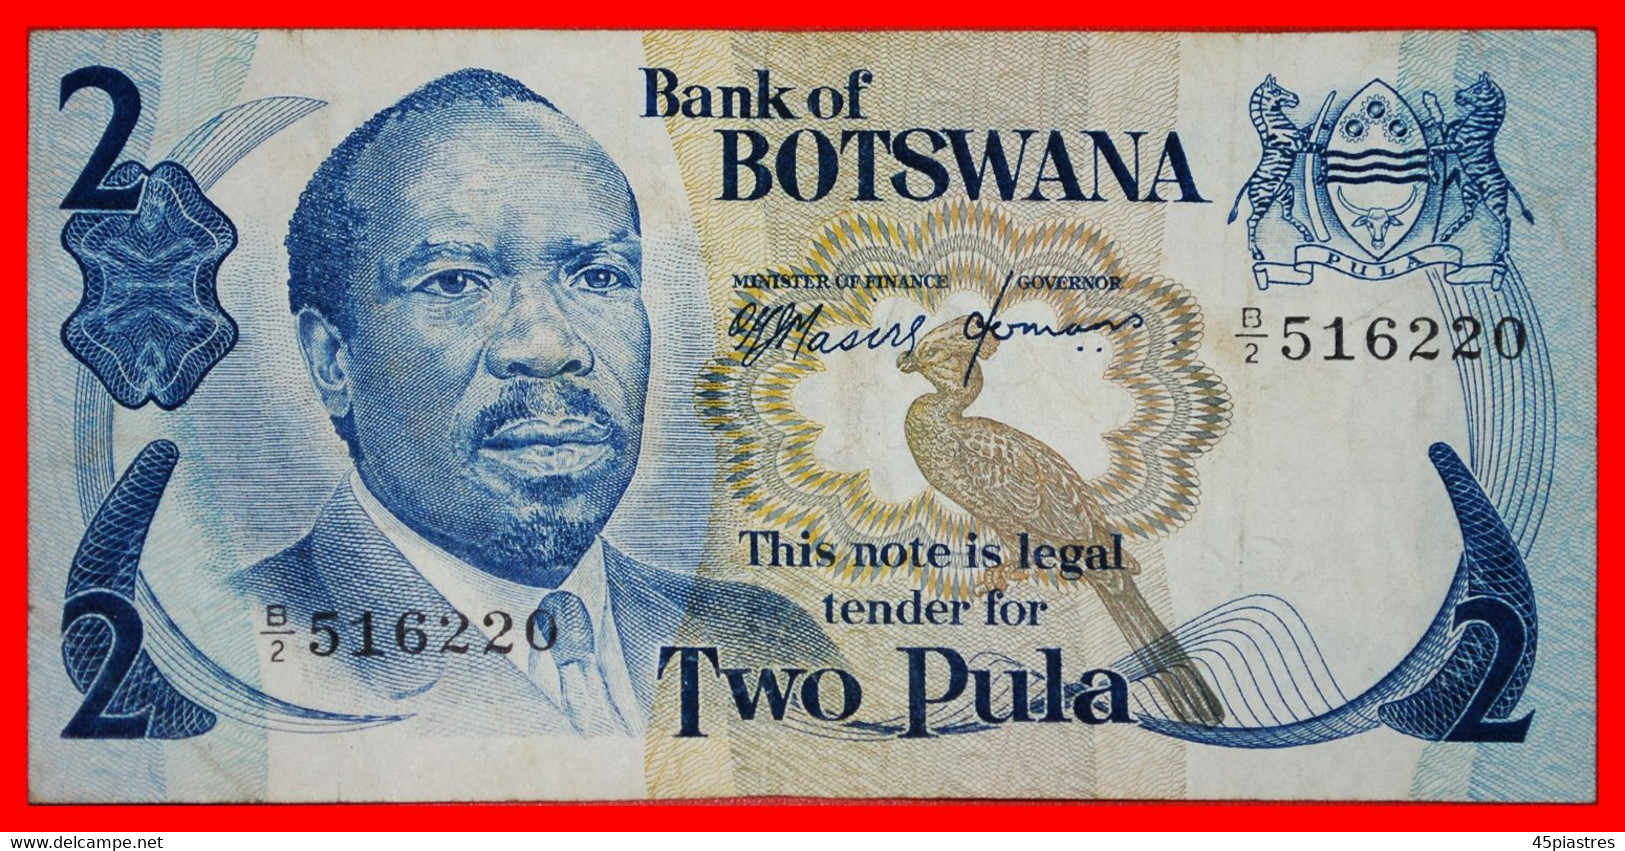 ~ GREAT BRITAIN: BOTSWANA ★ 2 PULA (1976) CRISP UNCOMMON! LOW START ★ NO RESERVE! - Botswana